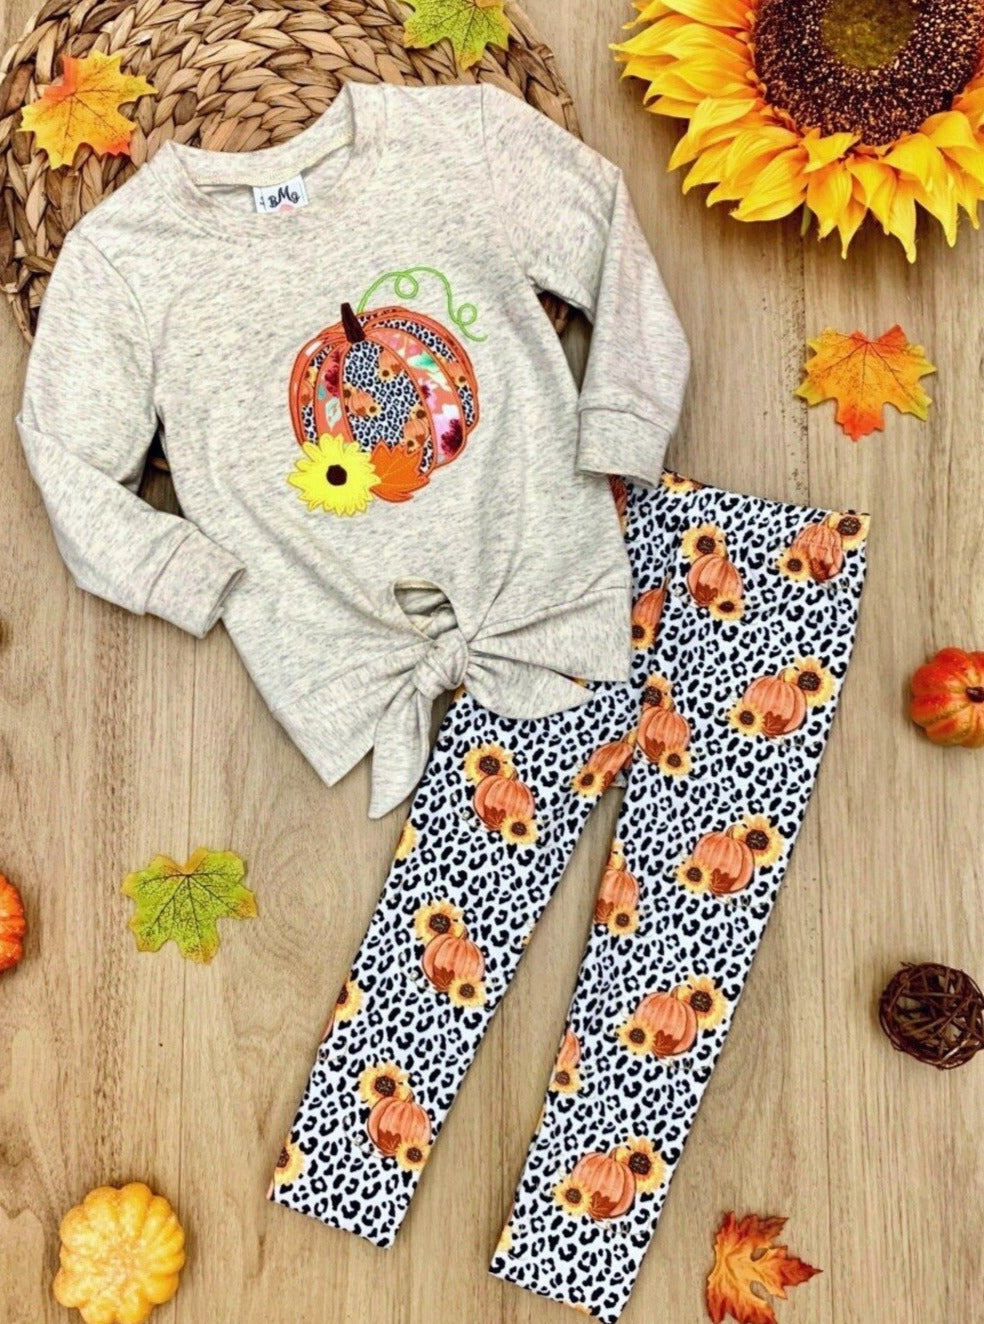 Fall Outfits | Knot Hem Top & Leopard Legging Set | Cute Girls Set